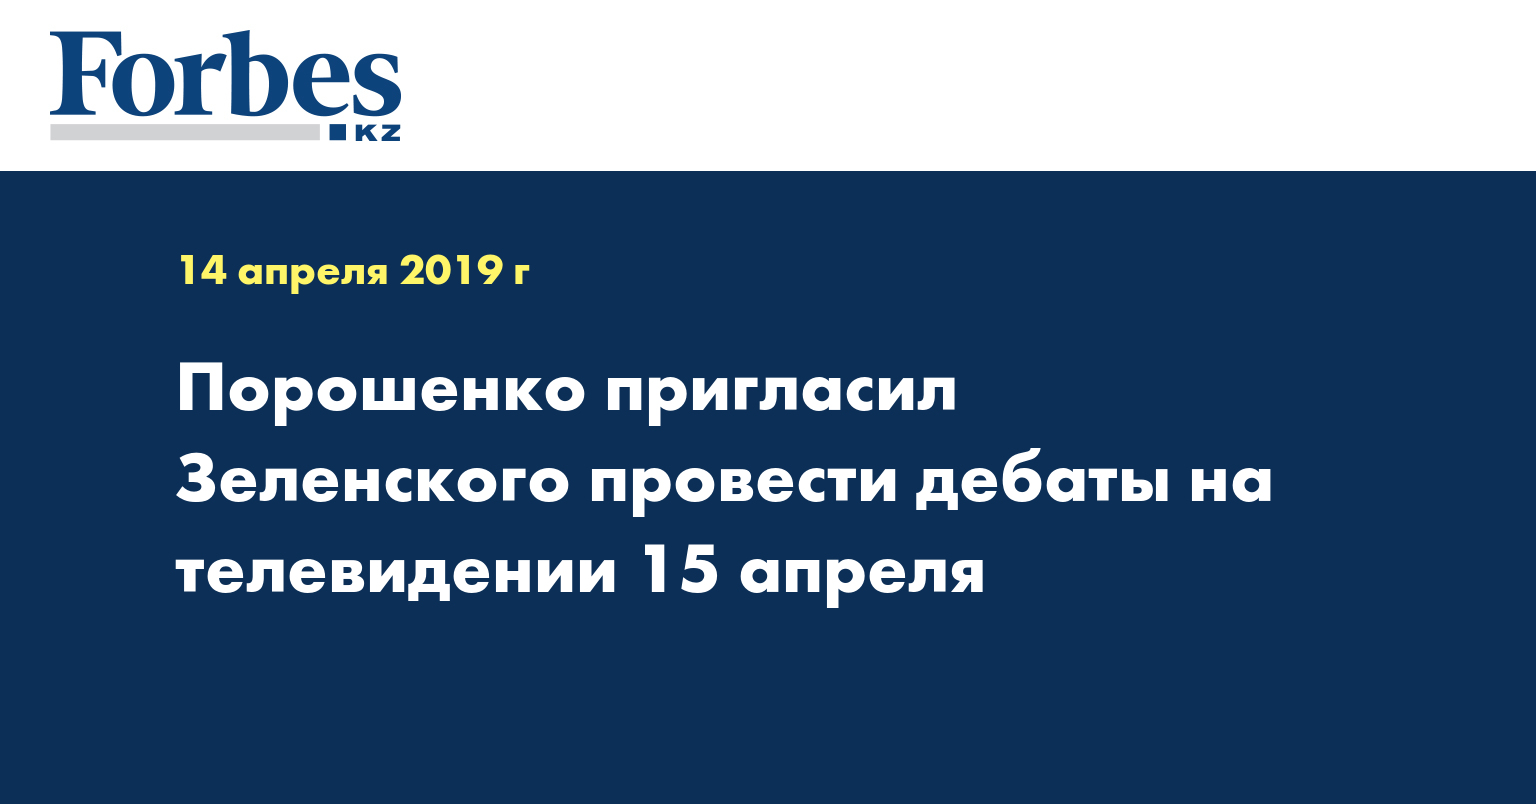 Порошенко пригласил Зеленского провести дебаты на телевидении 15 апреля